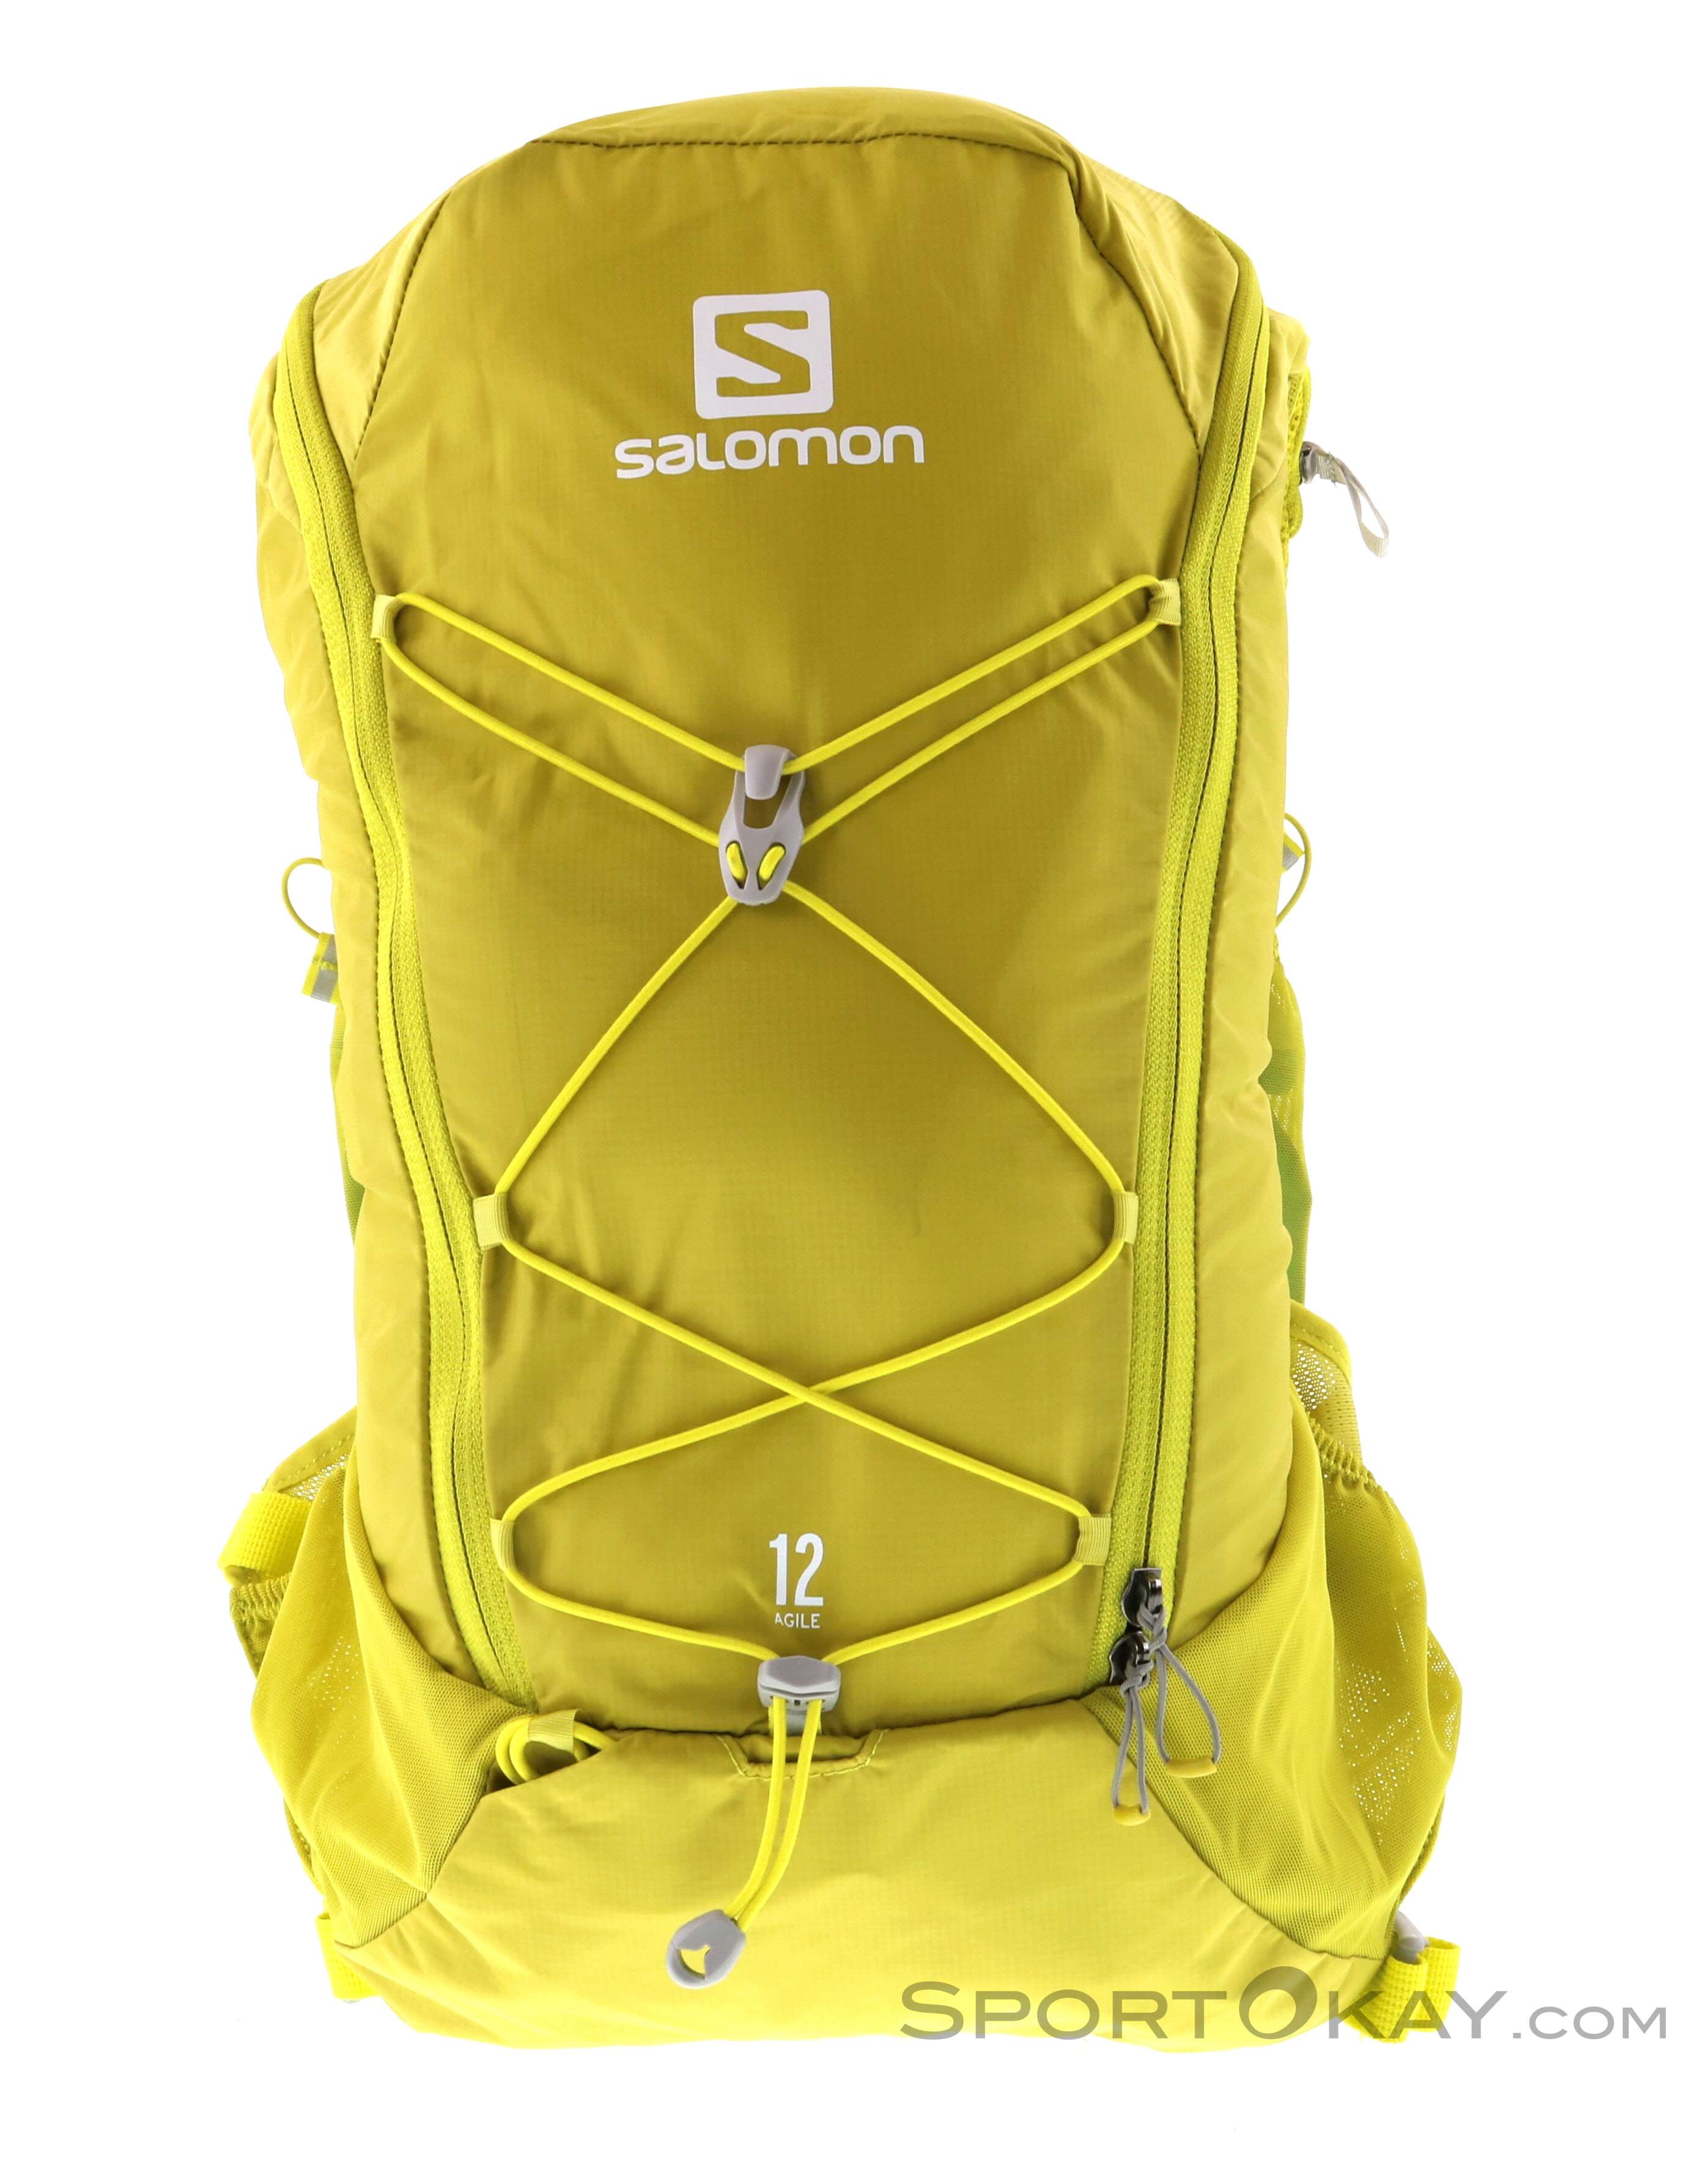 synonymordbog Uafhængig Happening Salomon Agile 12 Set 12.4l Backpack - Backpacks - Backpacks & Headlamps -  Outdoor - All